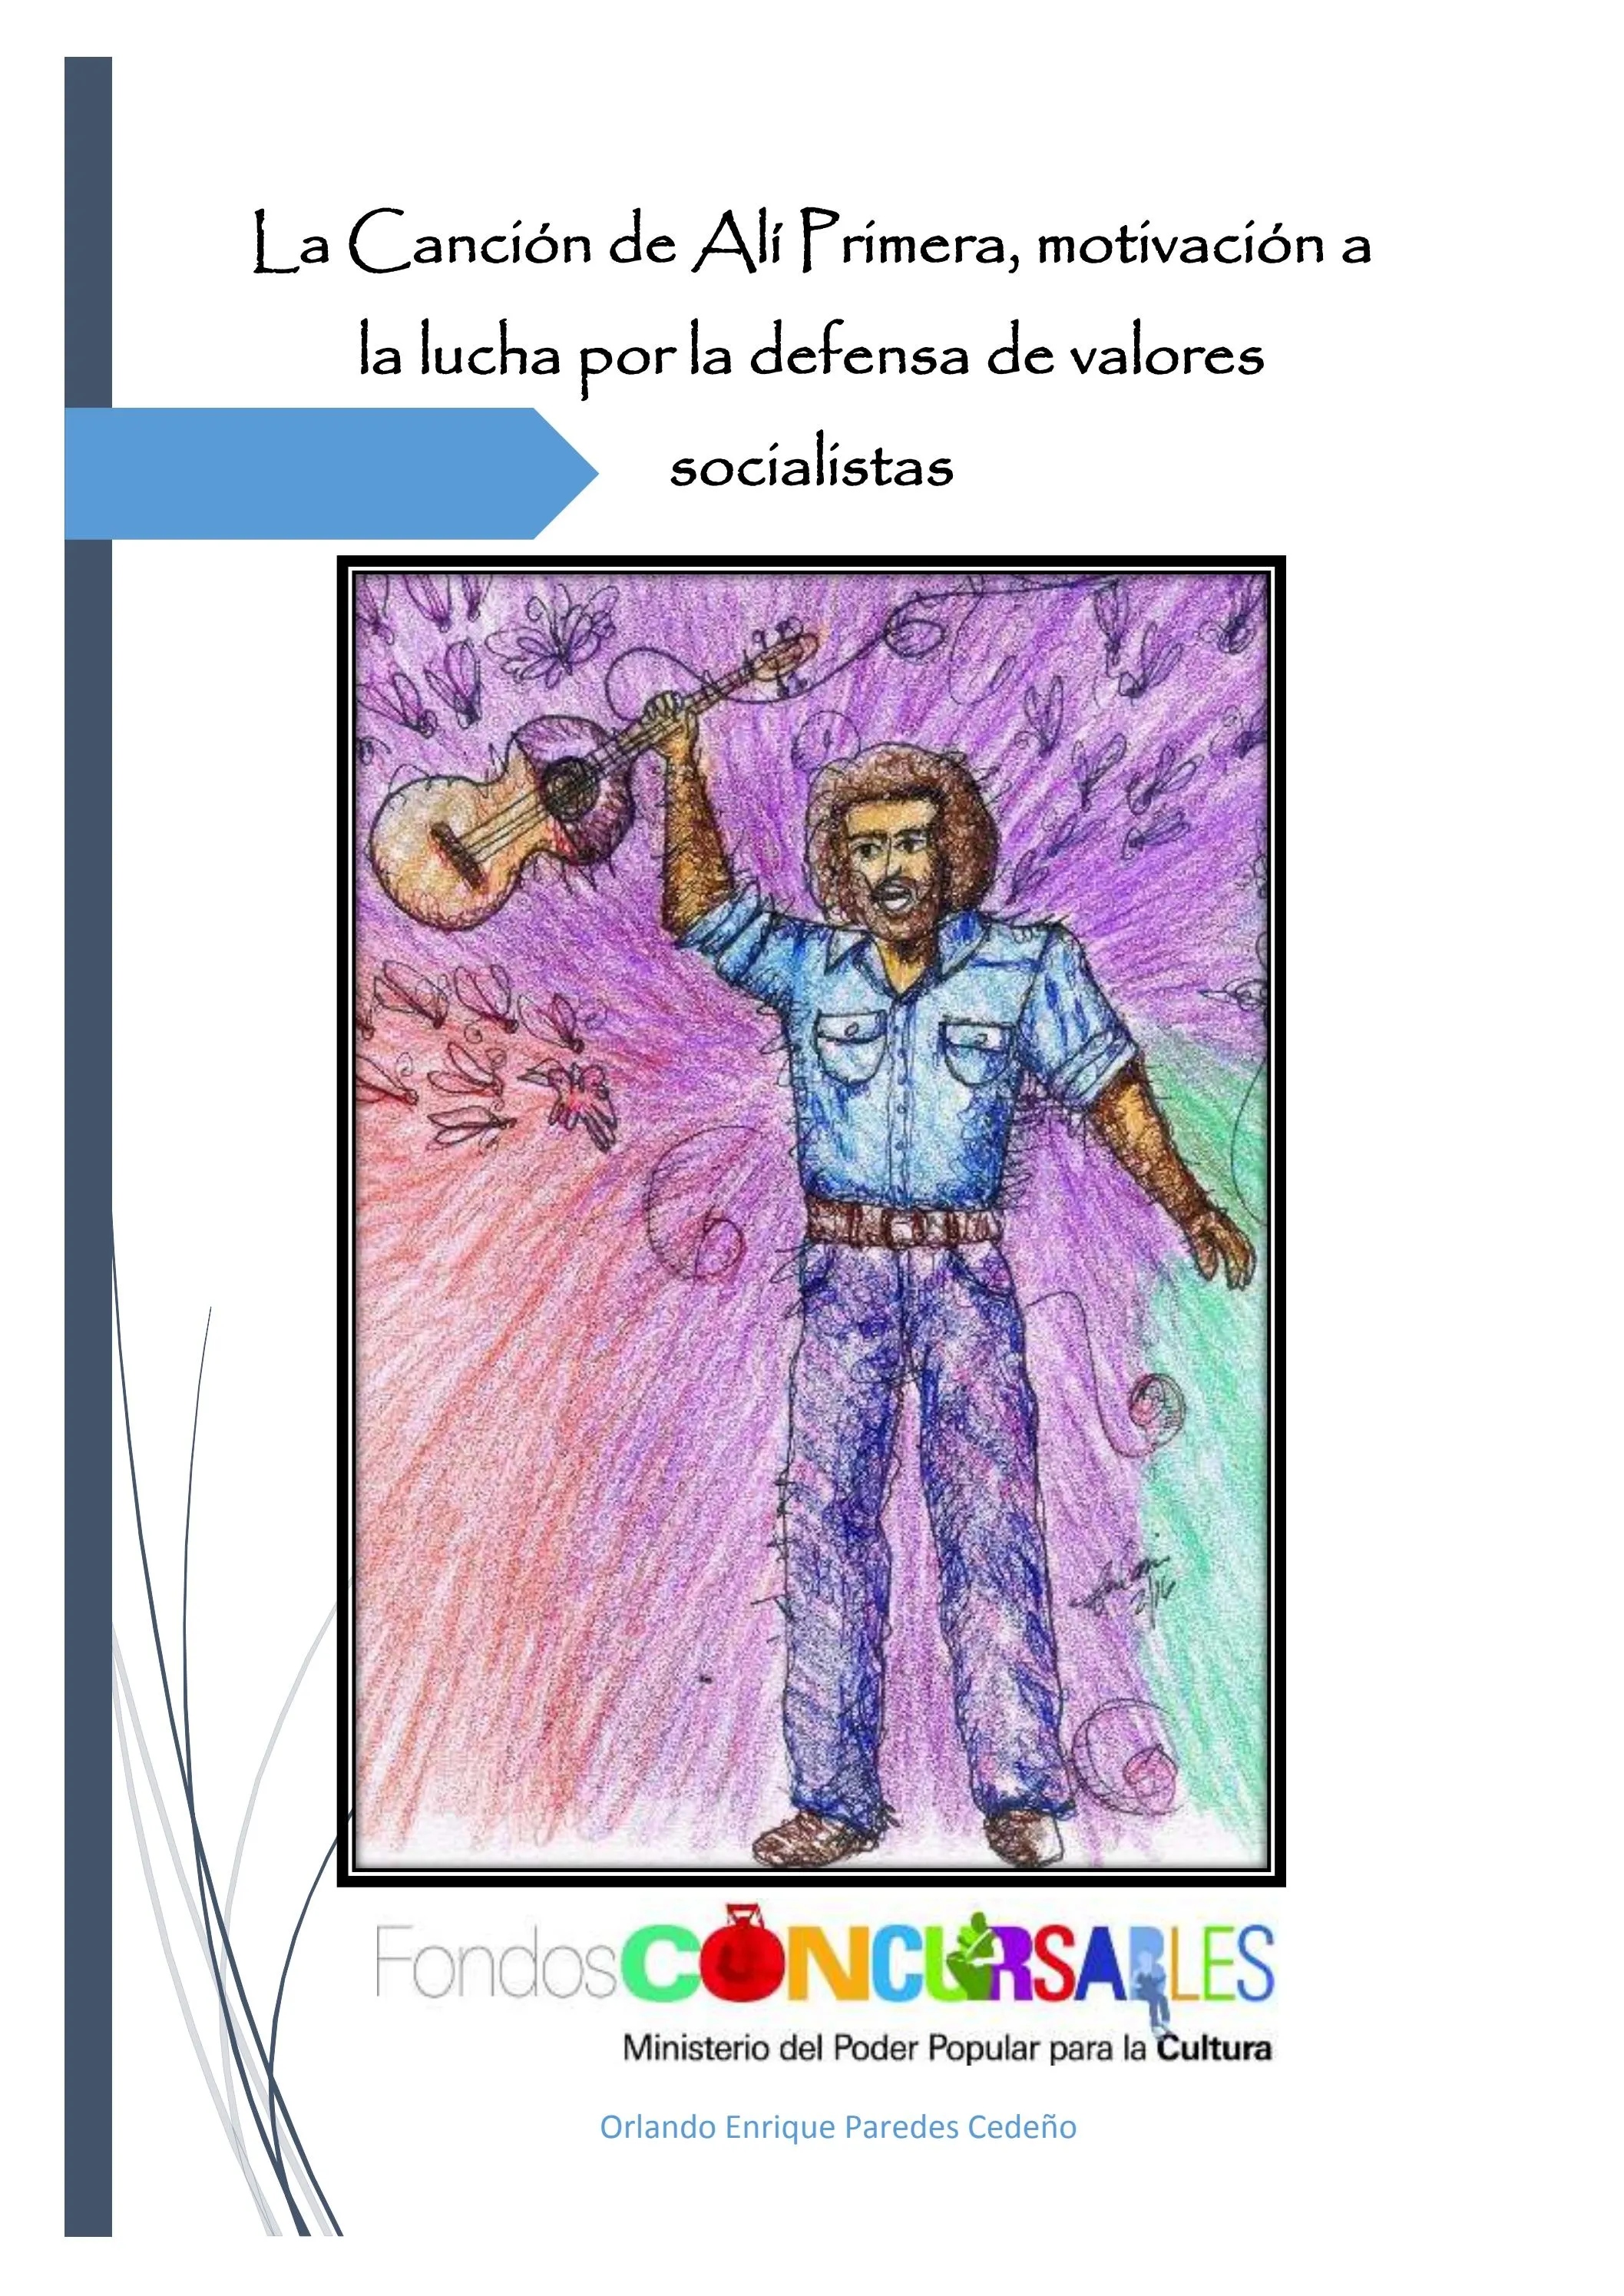 La Canción de Alí Primera, motivación a la lucha por la defensa de valores  socialistas by Orlando Enrique Paredes Cedeño - Issuu